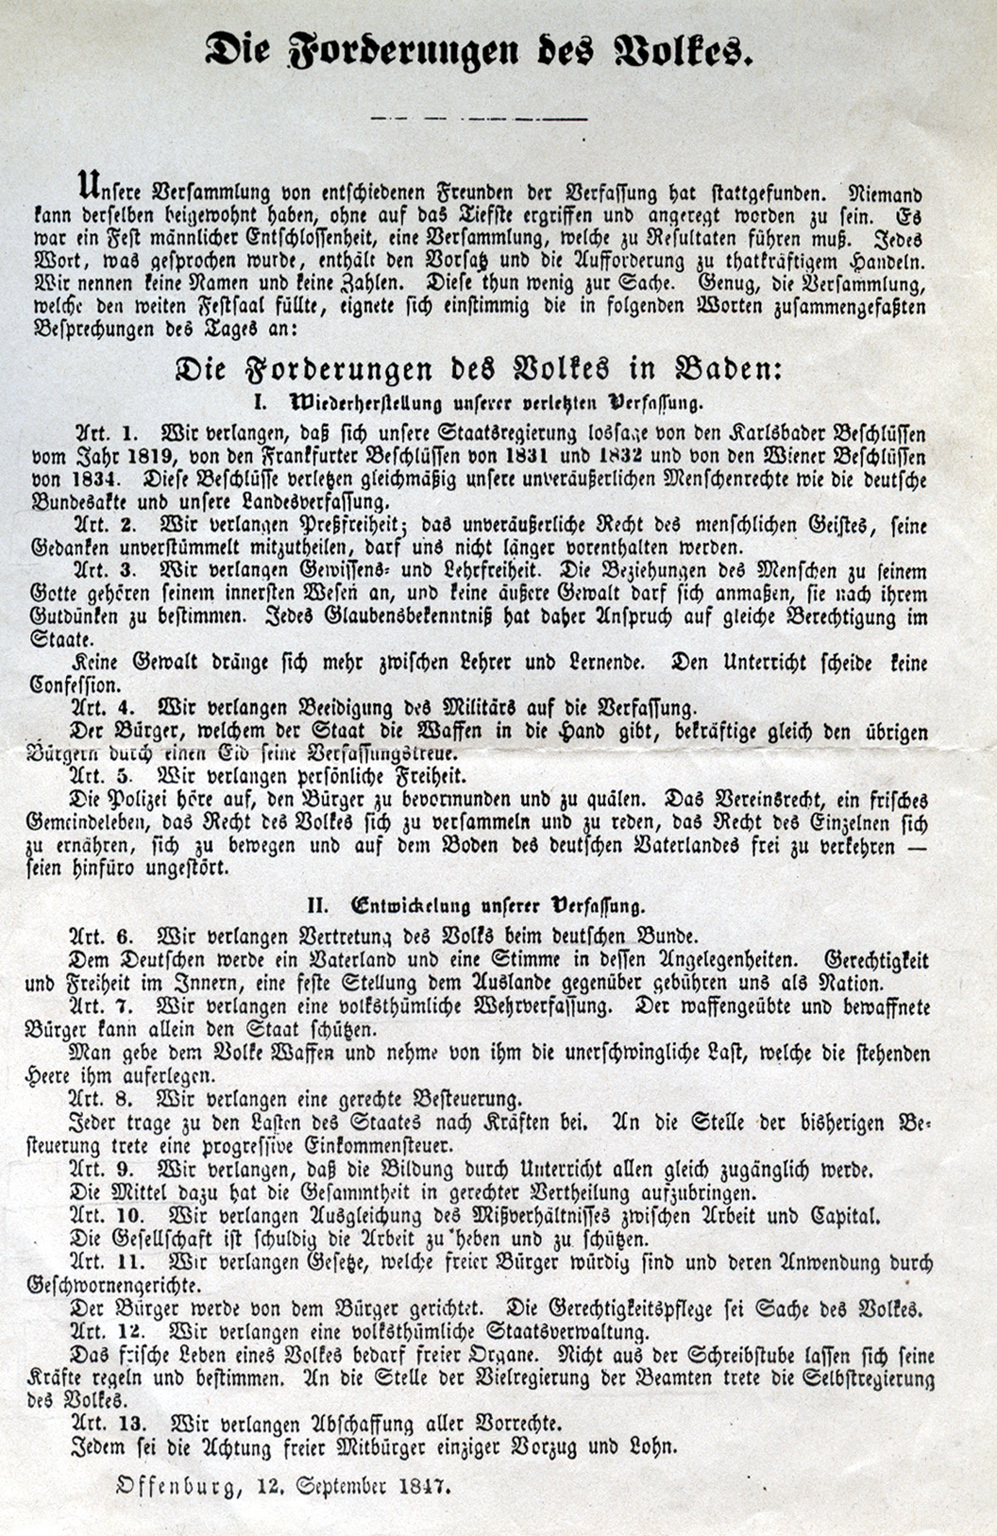  Forderungen des Volkes in Baden, Flugblatt von 1847 